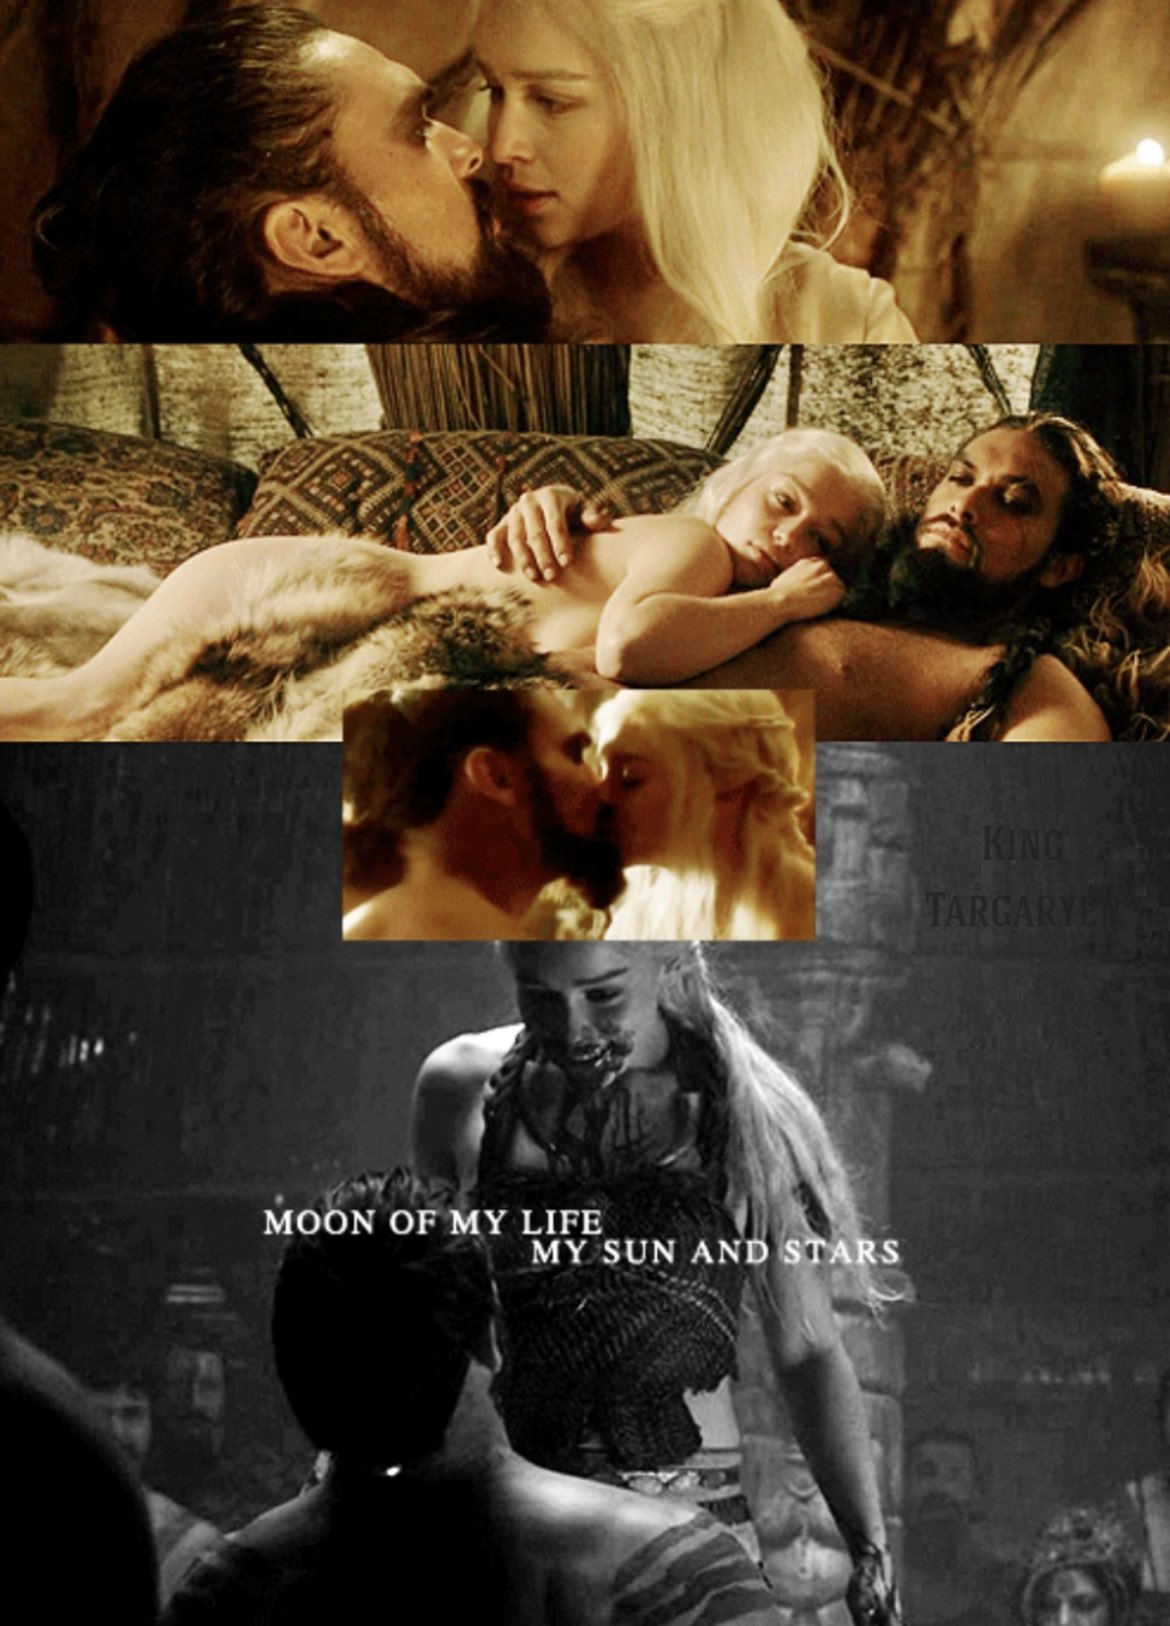 King Targaryen 🐉 on X: ¿Sabíais que en el libro 'Juego de Tronos', la  escena de la Noche de Bodas entre Daenerys y Khal Drogo fue un acto  consentido y no una